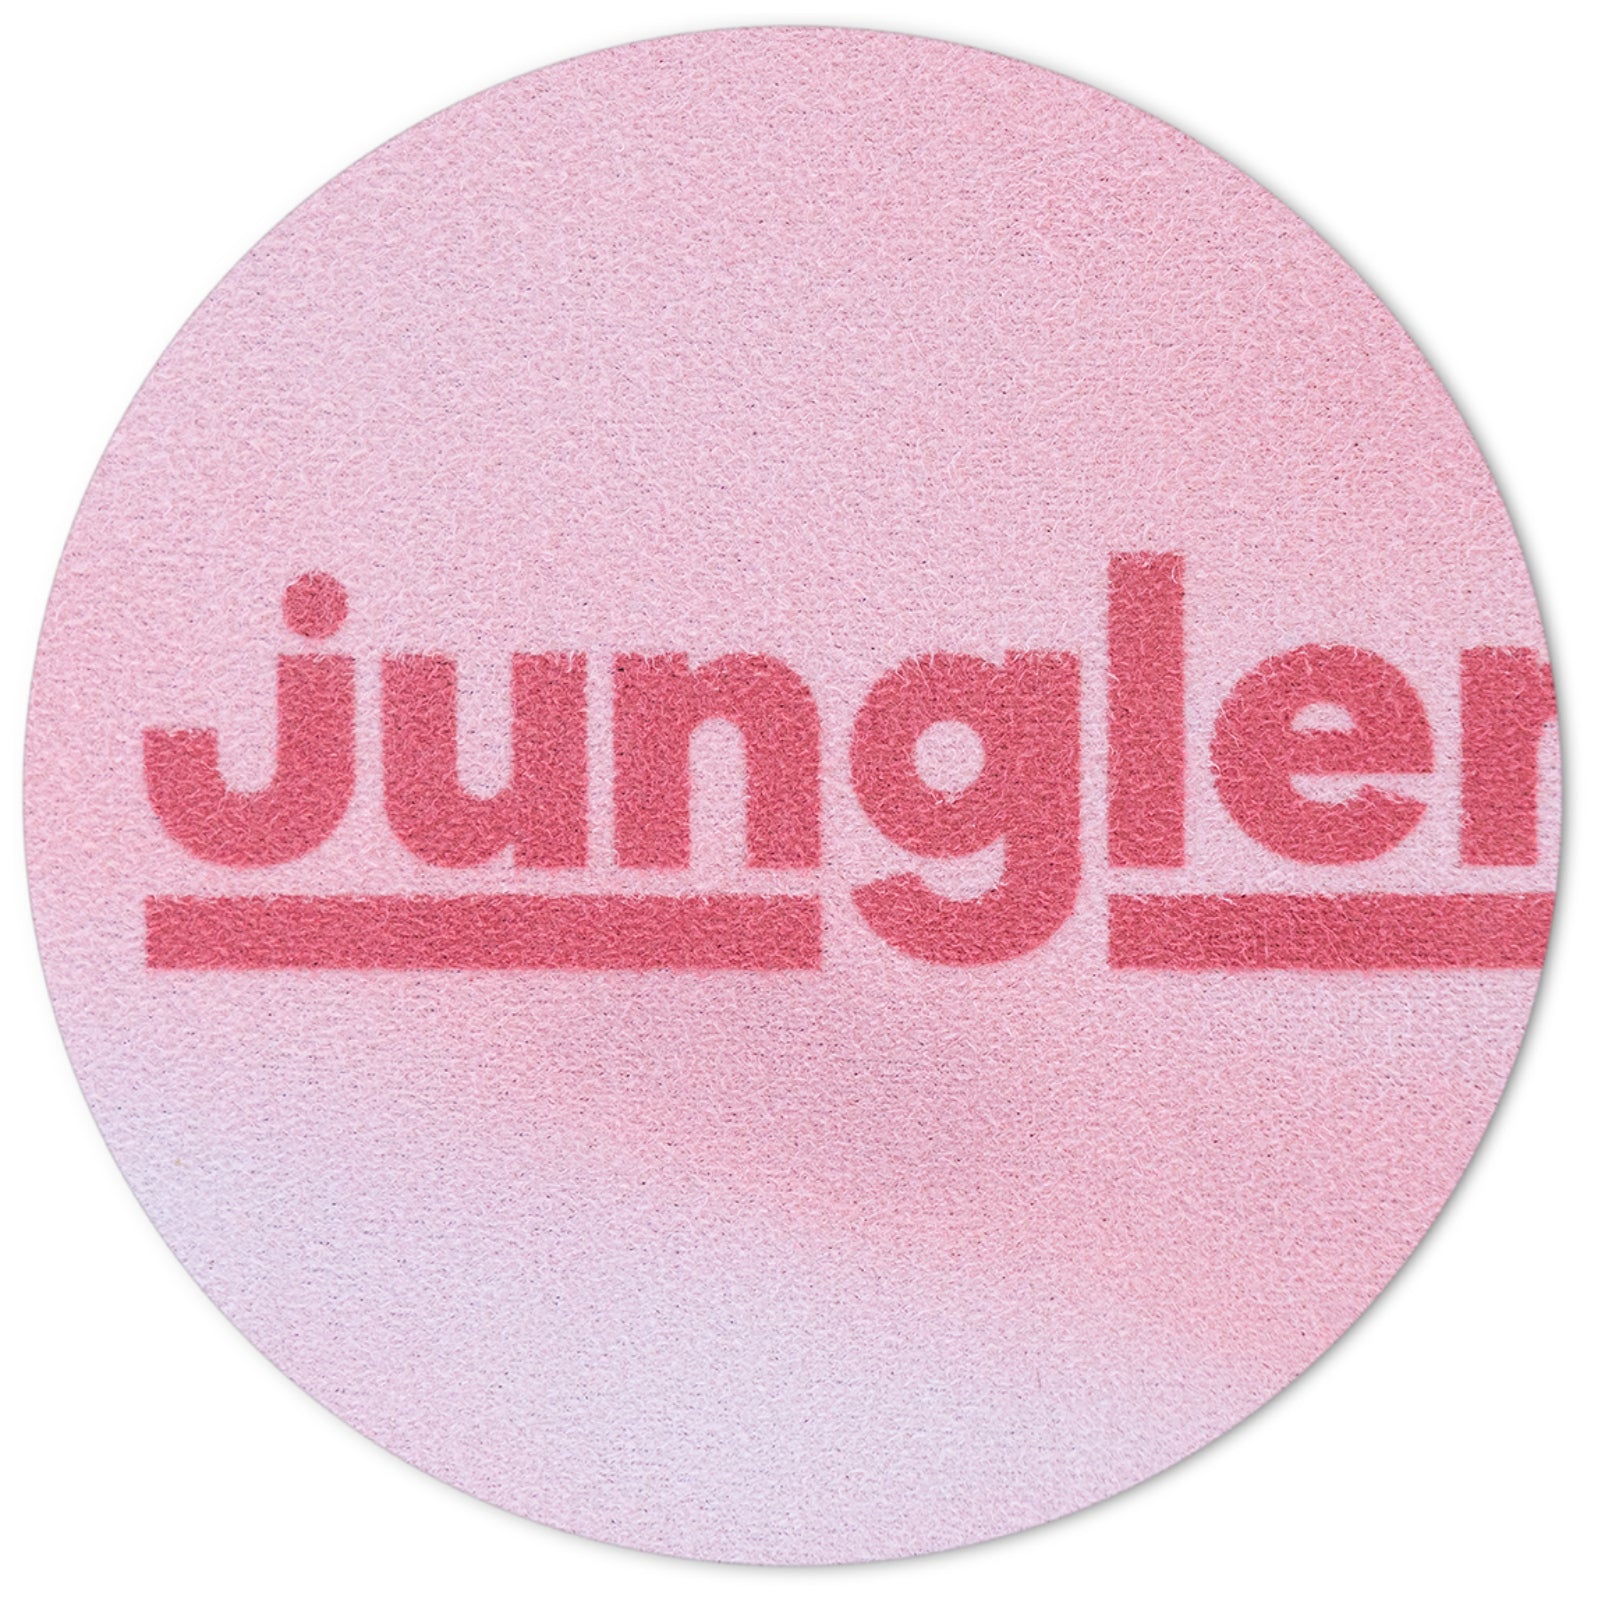 Detalle del logo de Junglemat